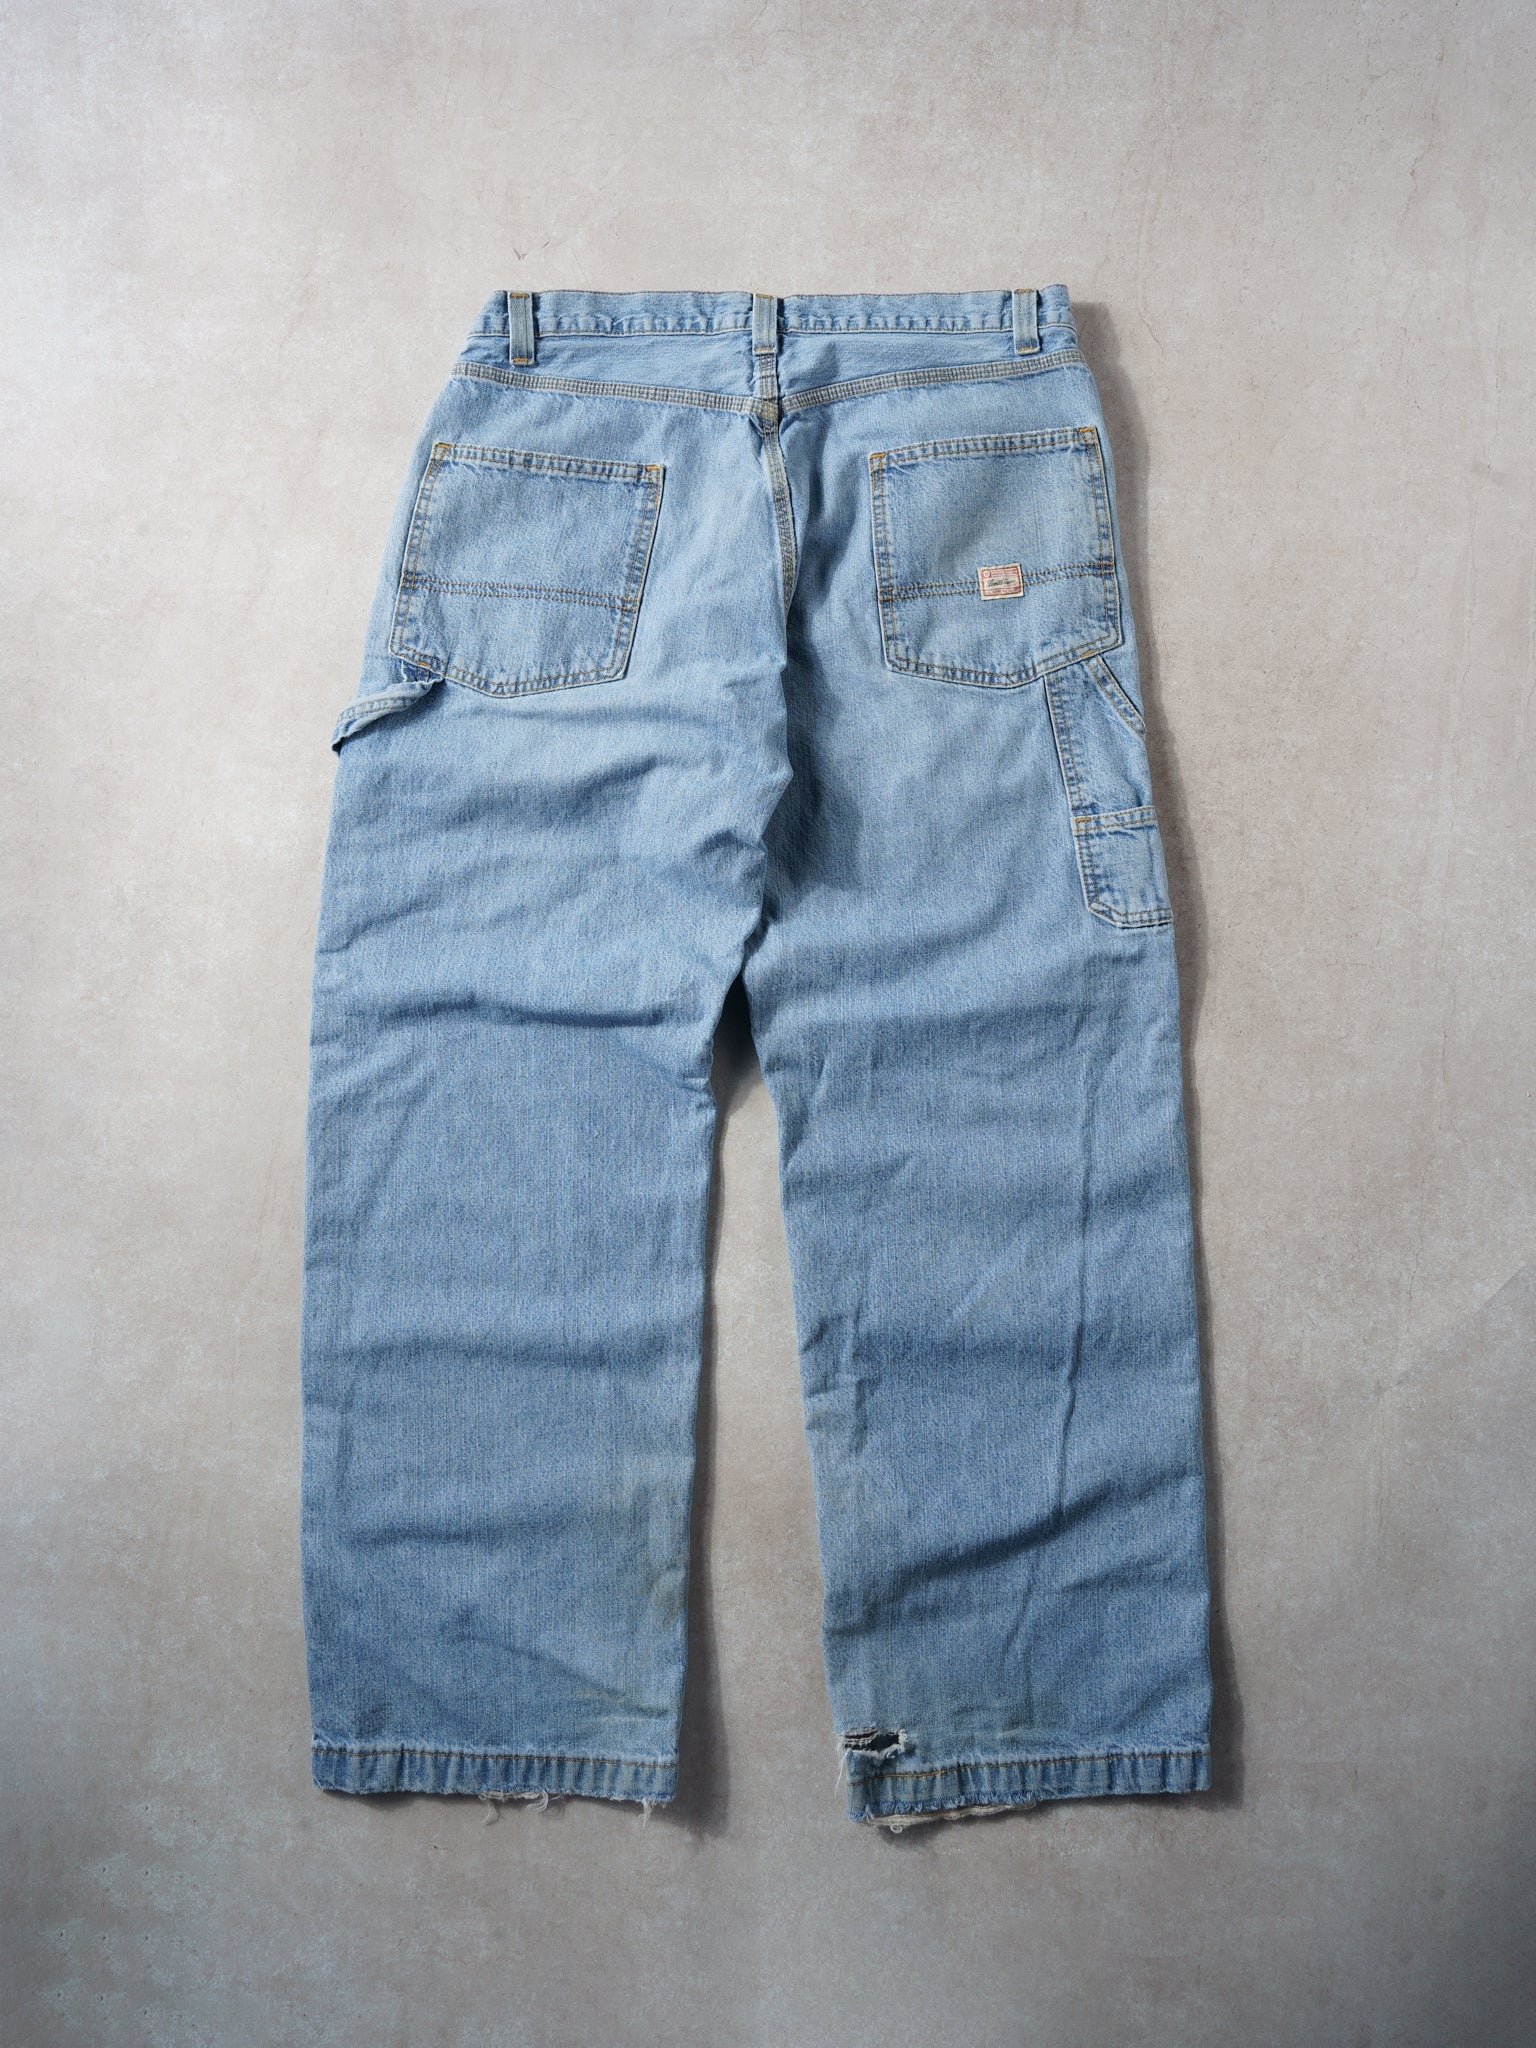 Vintage 90s Light Wash Levi's Denim Carpenter Pants (36x31)